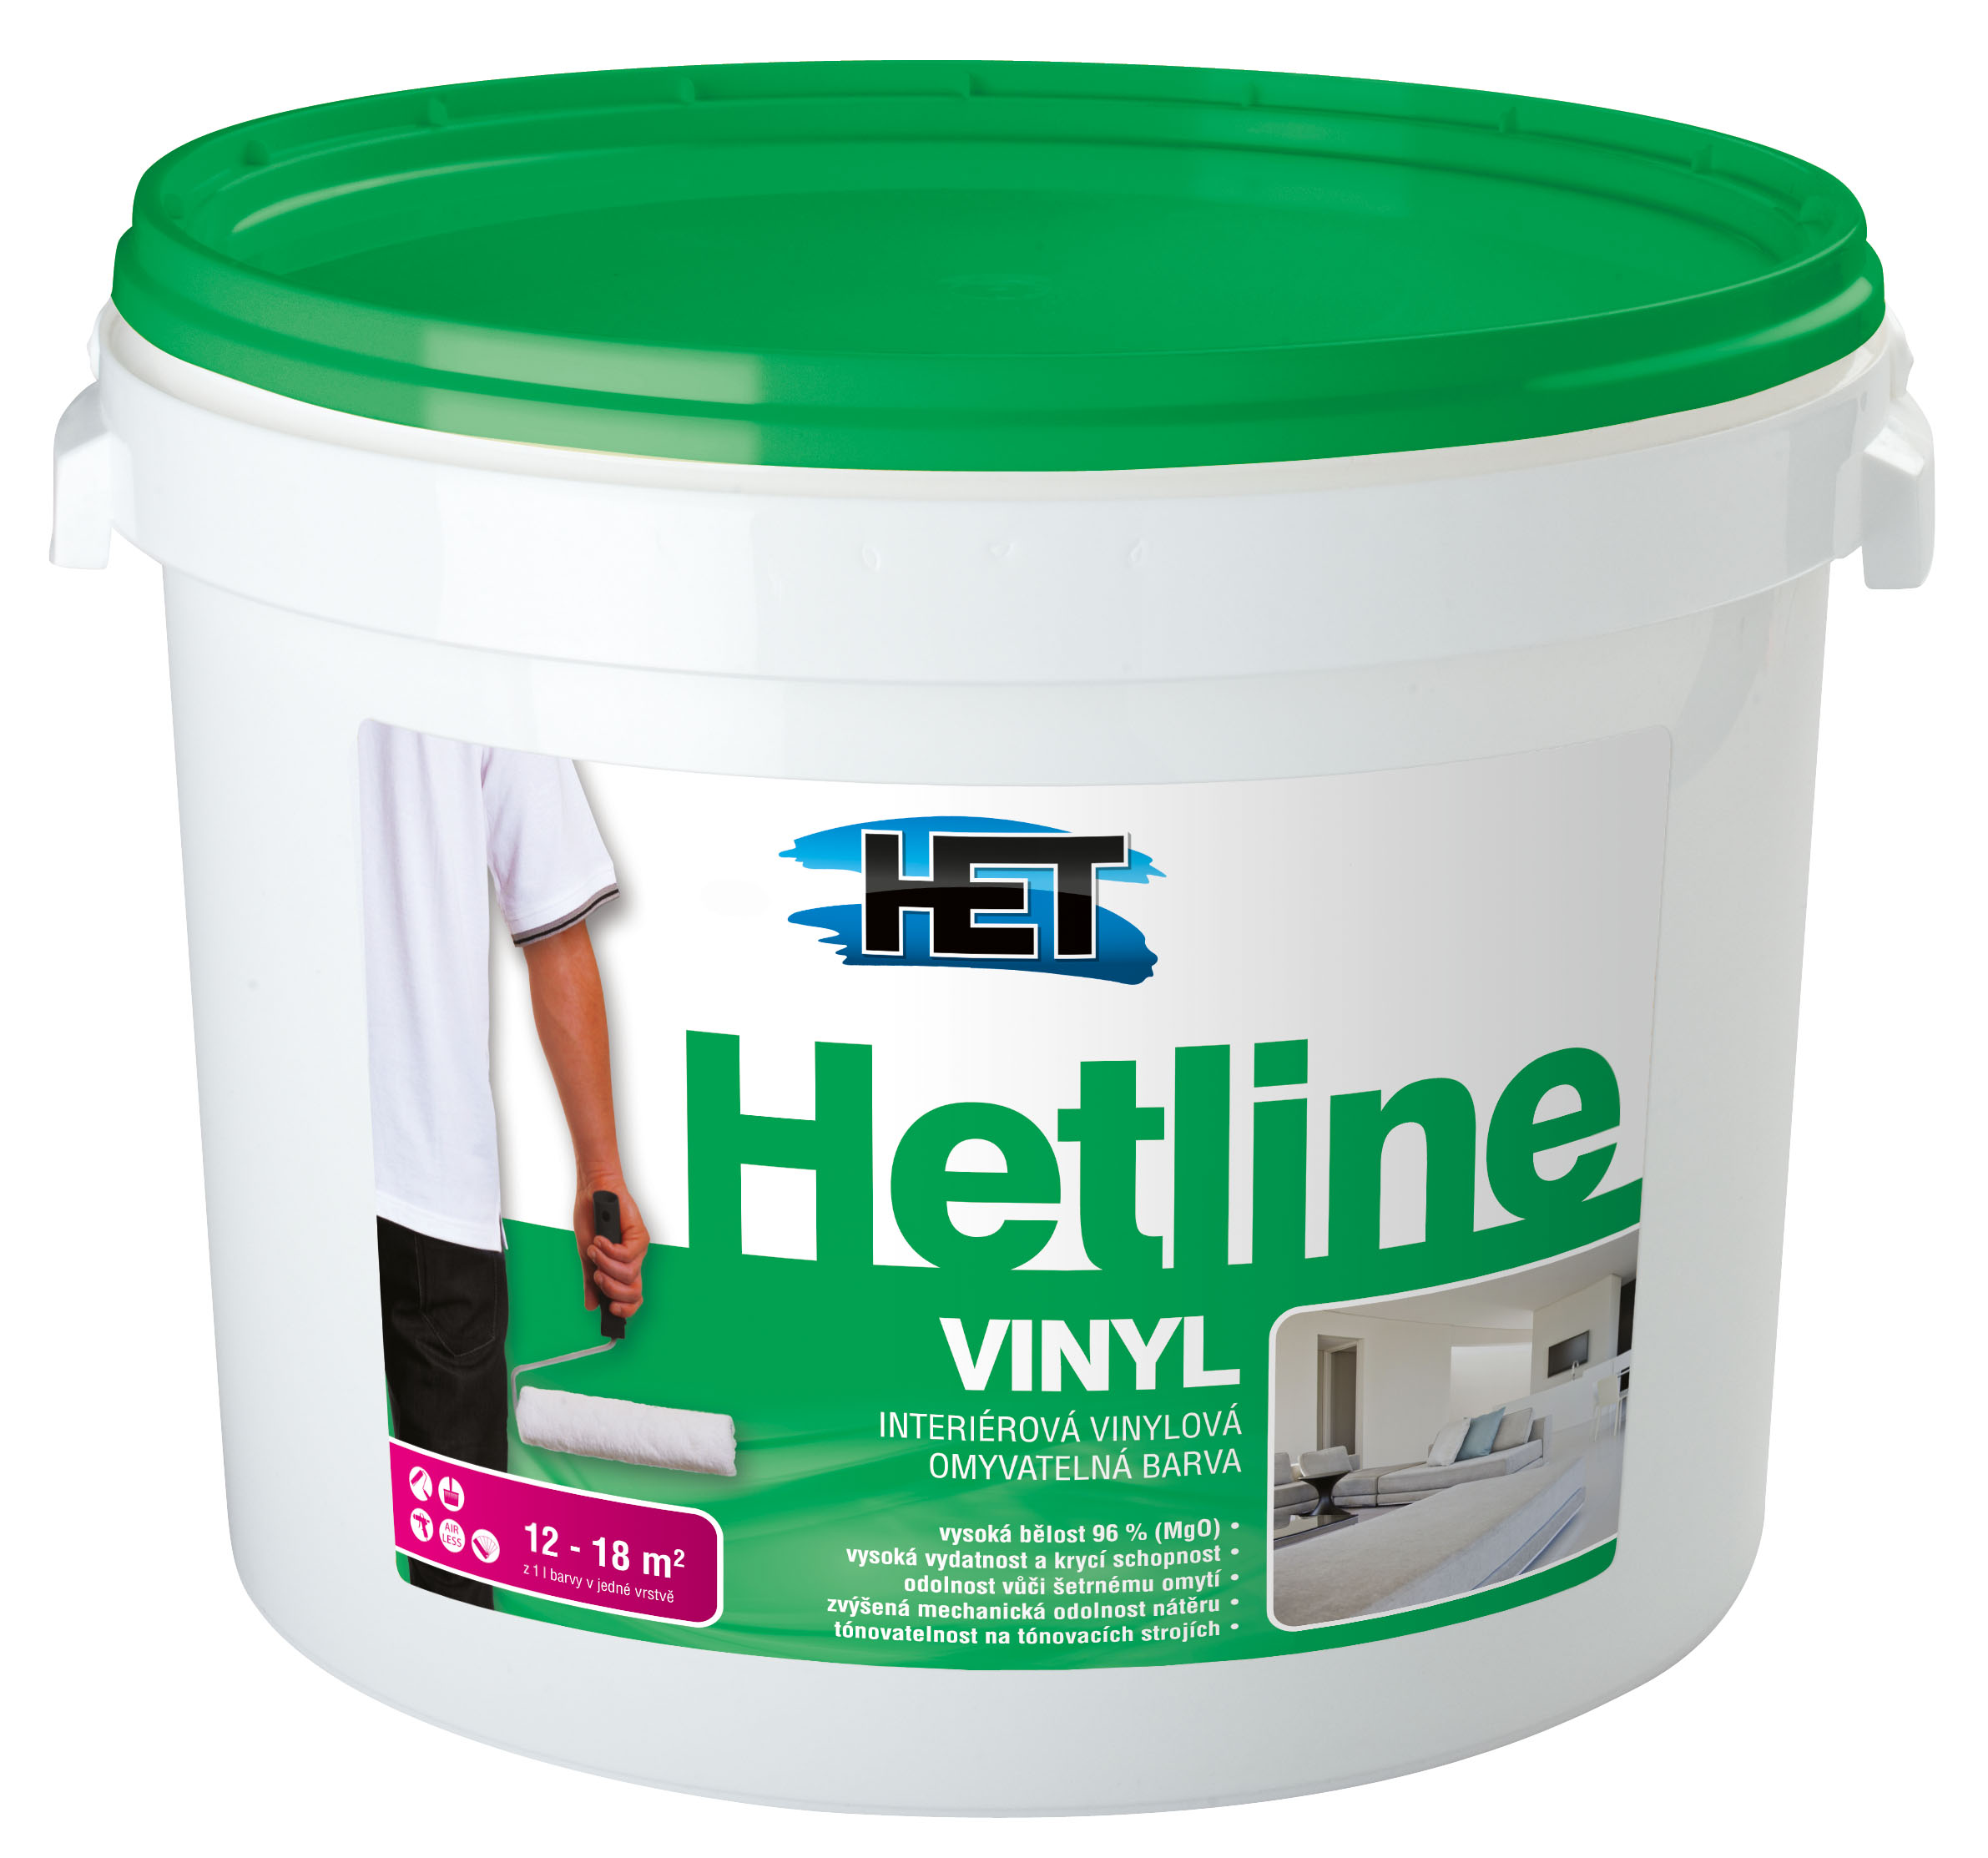 HETLINE – специальные краски для штукатурки и гипсокартона